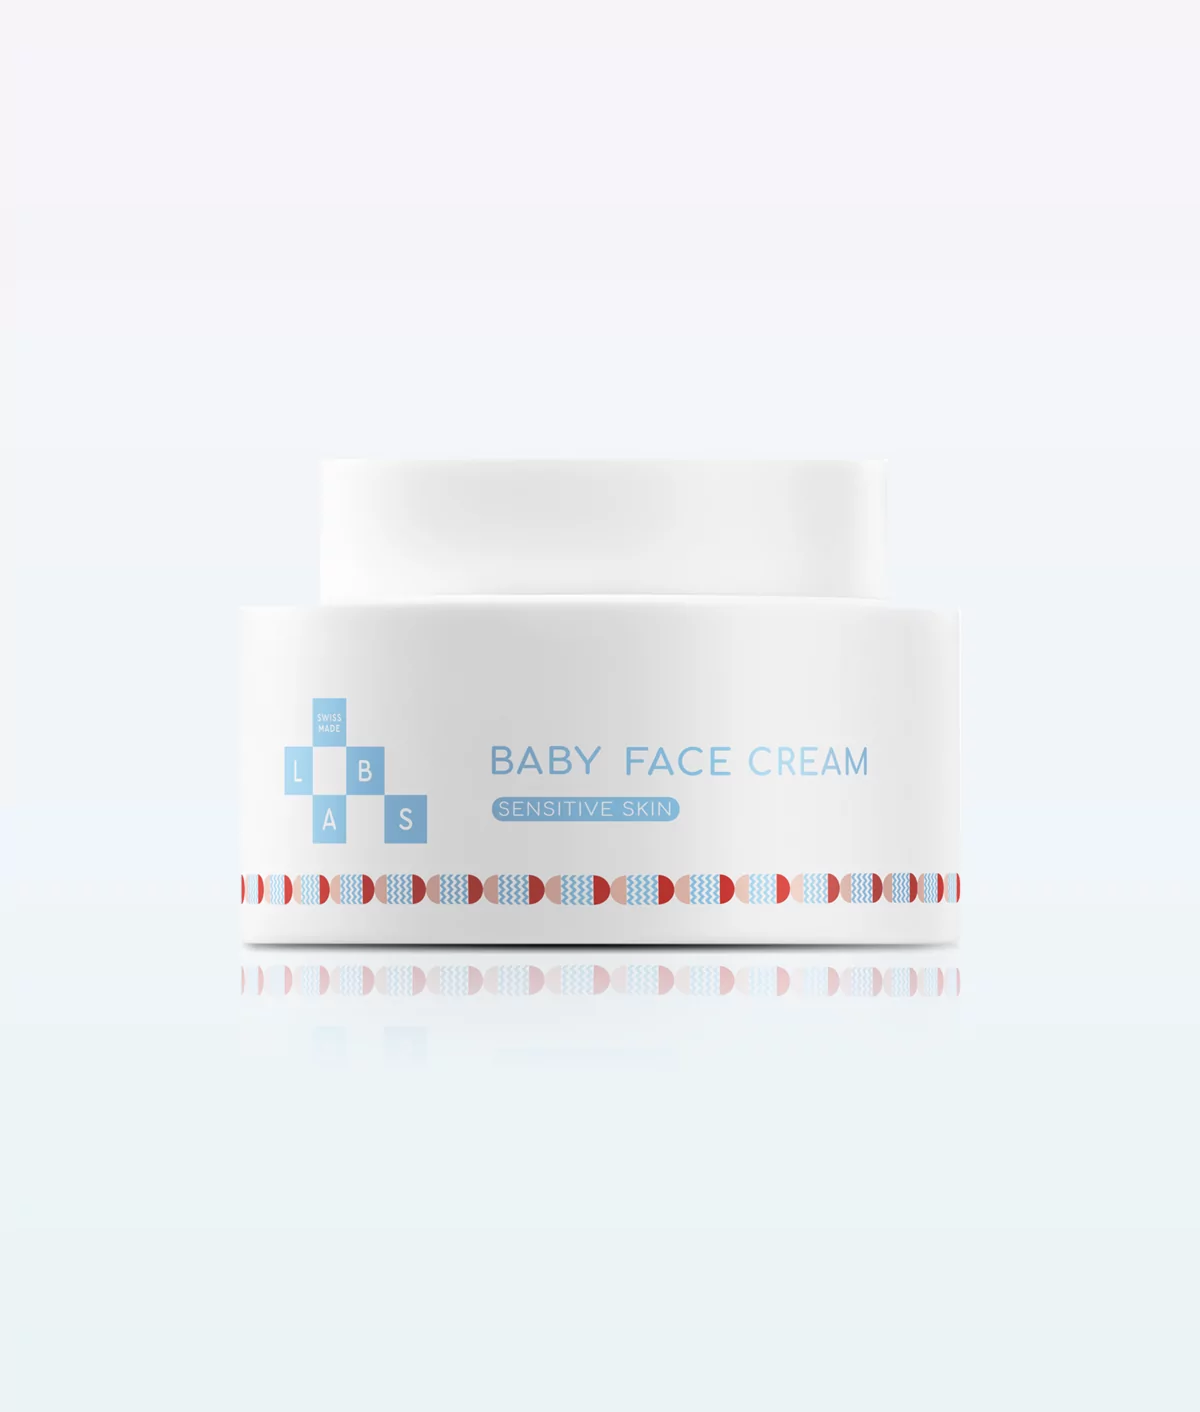 Crema facial para bebés de Swissmadelabs